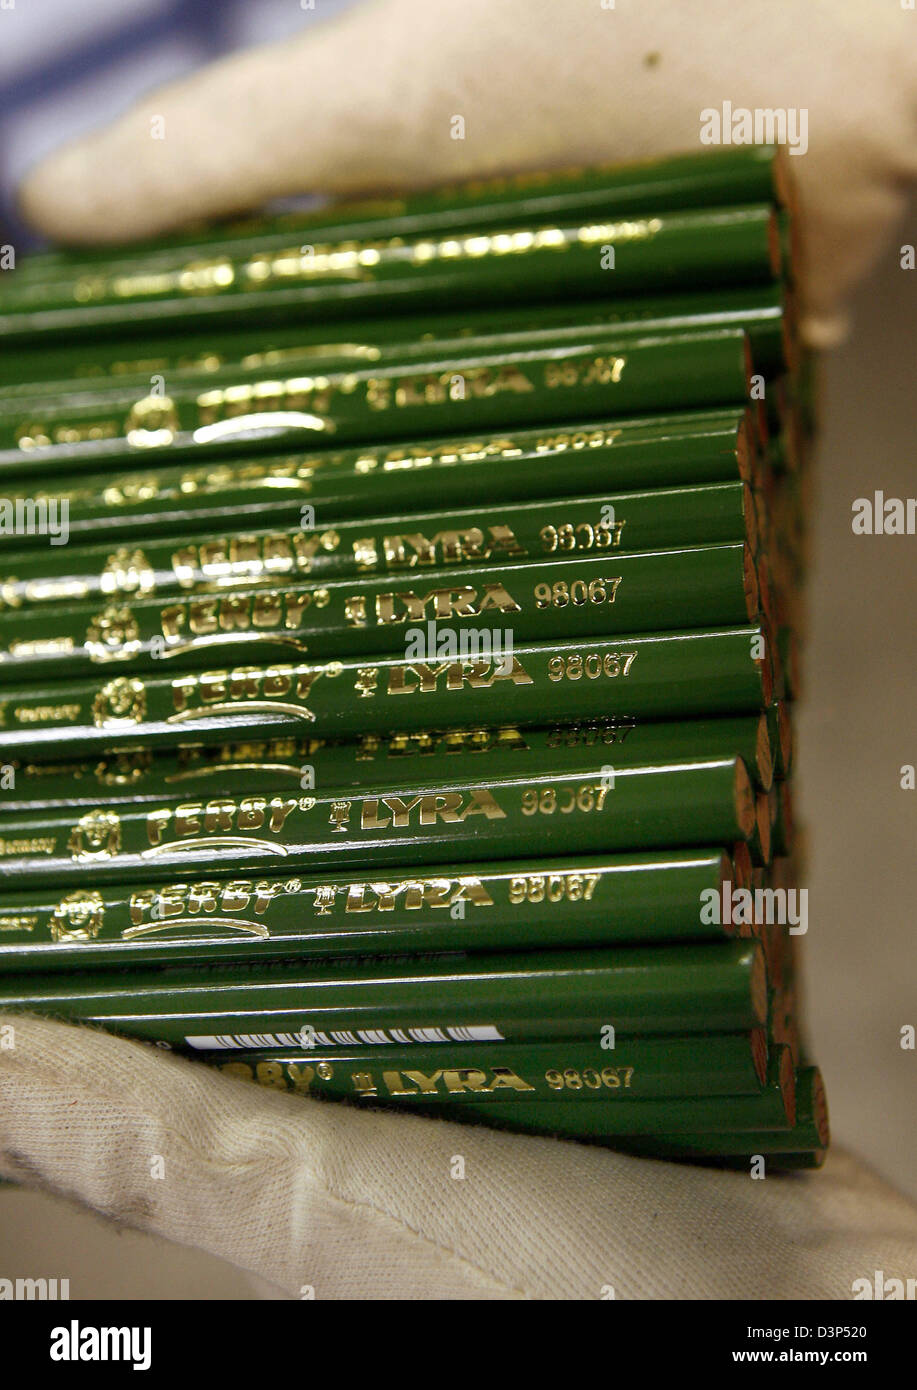 Ein Mitarbeiter des Herstellers Stift Lyra zeigt Bleistifte in der Firma in Nürnberg, 18. August 2006. Mit einer Jahresproduktion von 45 Millionen Stifte ist Lyra der kleinste Spieler in der Nürnberger schreiben Utensil Industrie mit Marken wie Faber-Castell, Staedtler und Schwan-Stabilo. Foto: Daniel Karmann Stockfoto